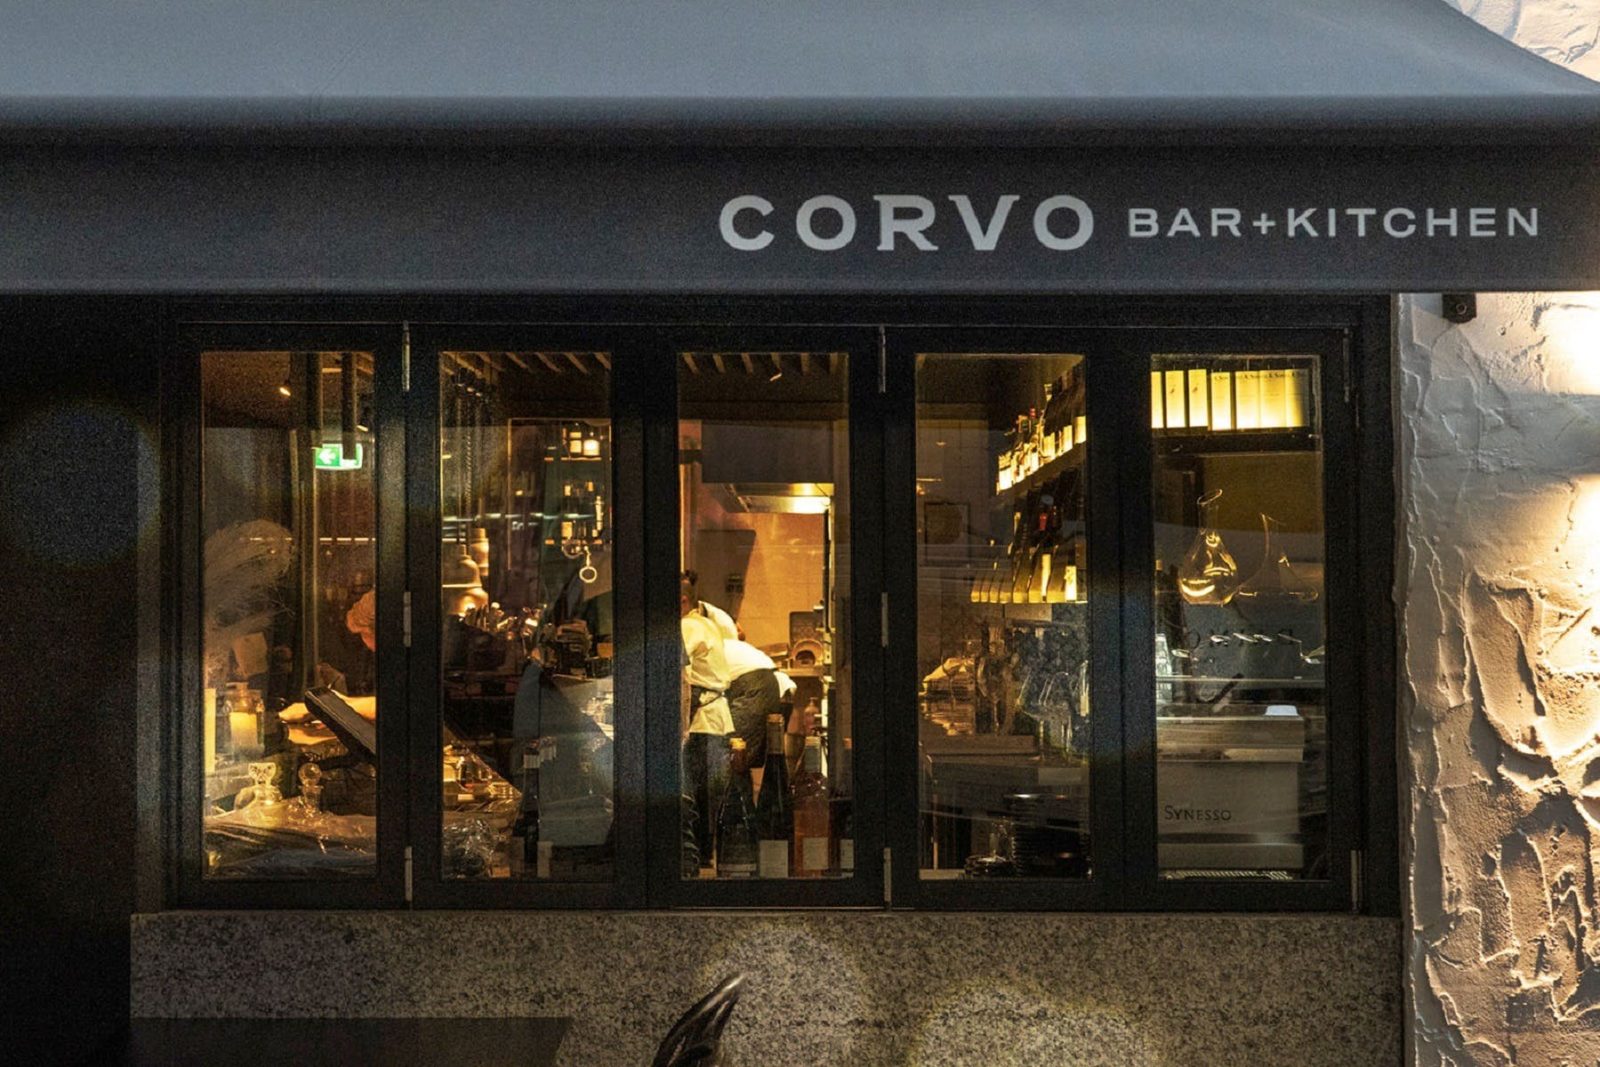 Corvo Bar + Kitchen, Claremont, Western Australia